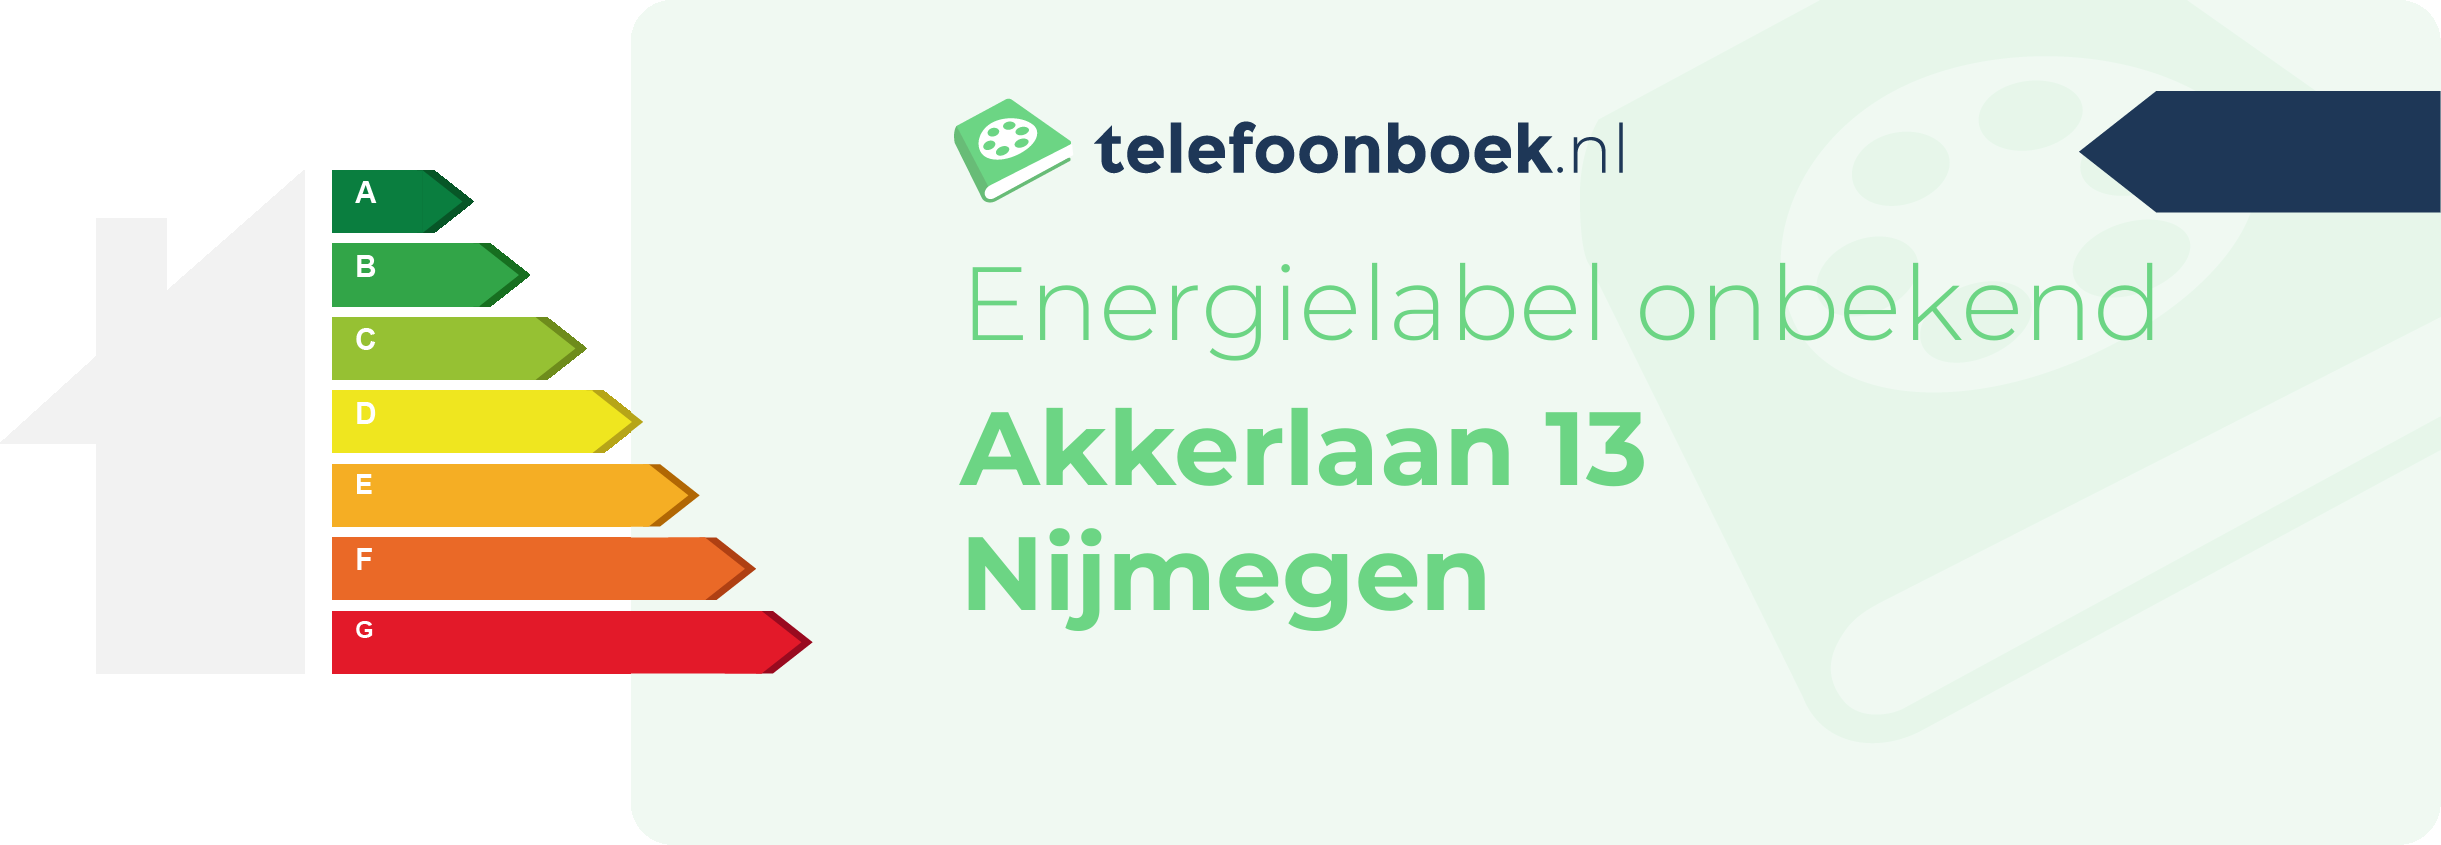 Energielabel Akkerlaan 13 Nijmegen